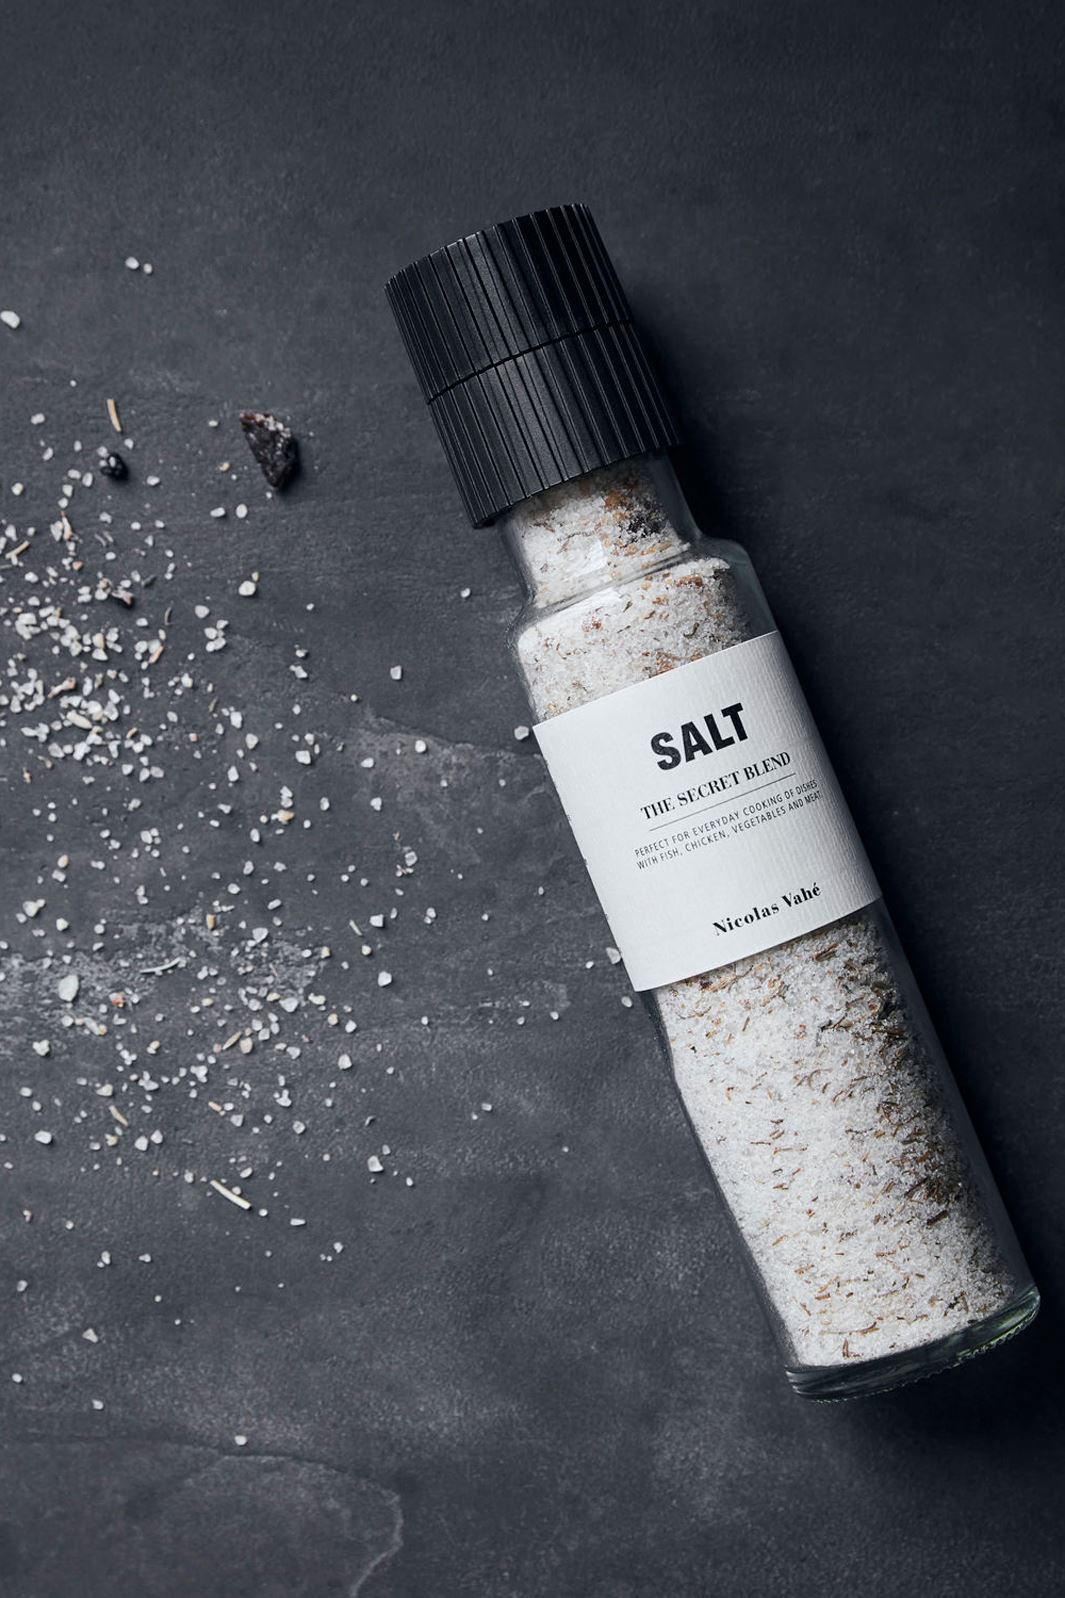 Nicolas Vahe - Salt, The Secret Blend Salt 